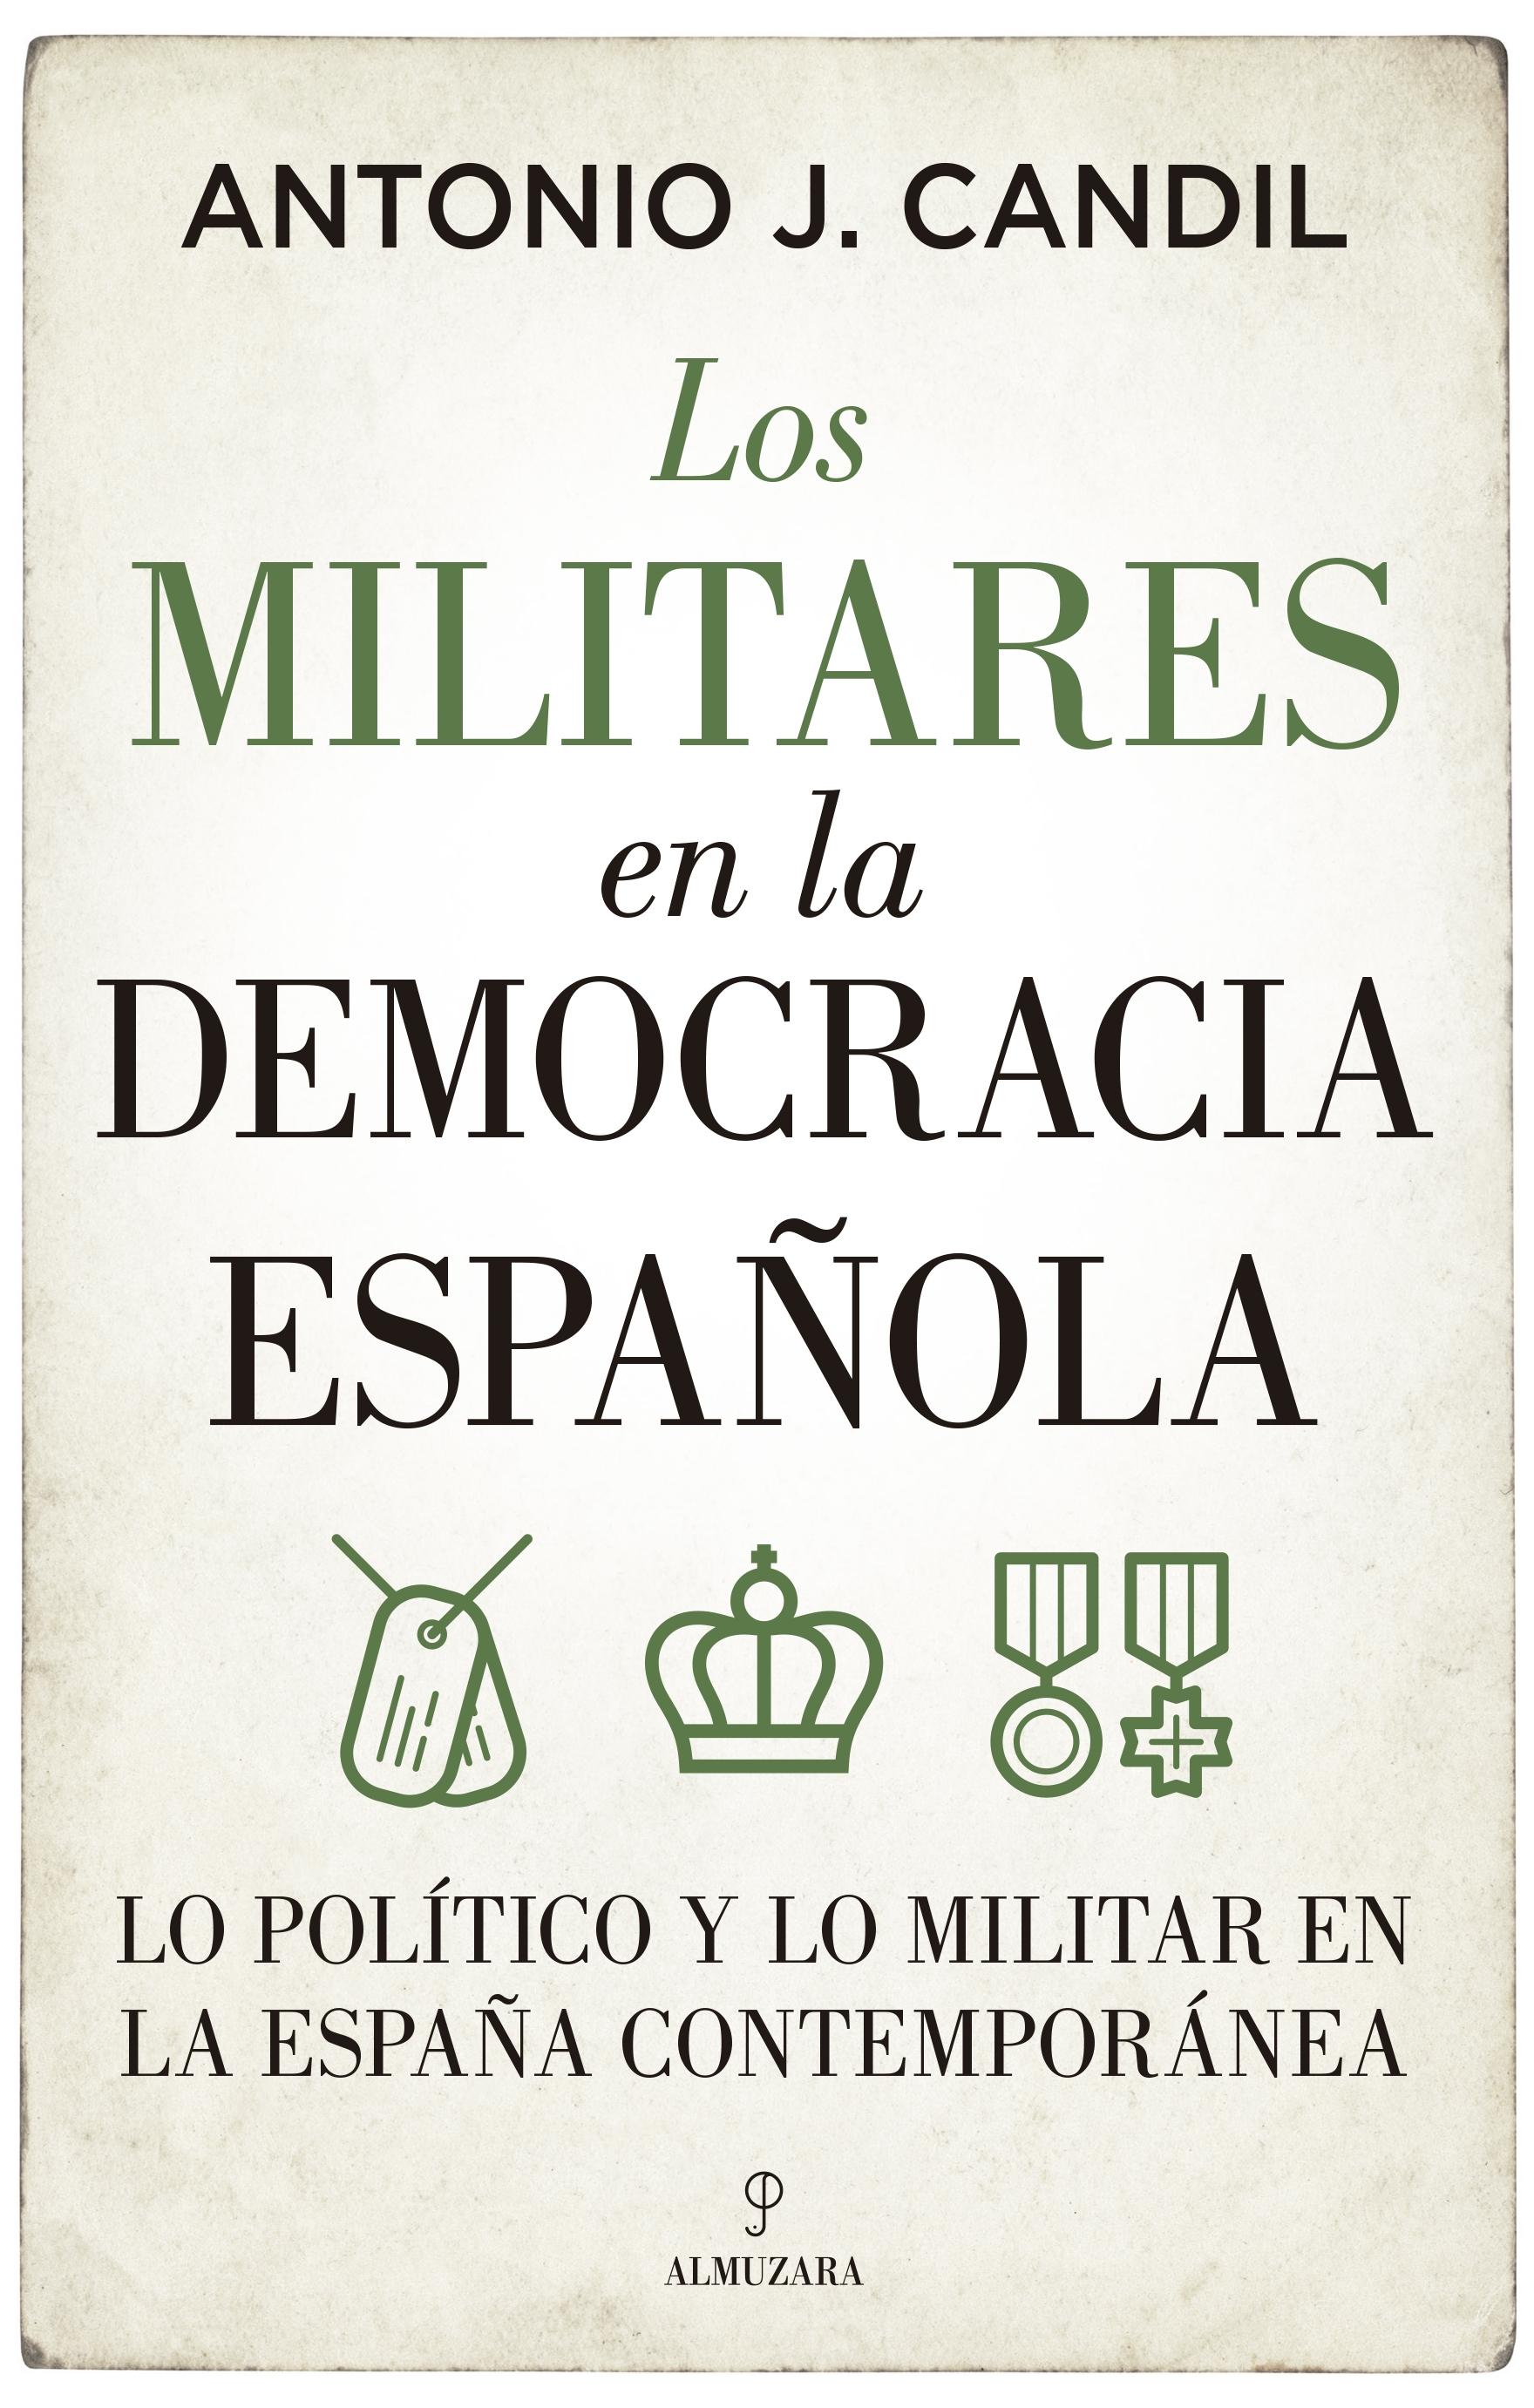 Militares en la democracia española, Los "Lo político y lo militar en la España contemporánea"